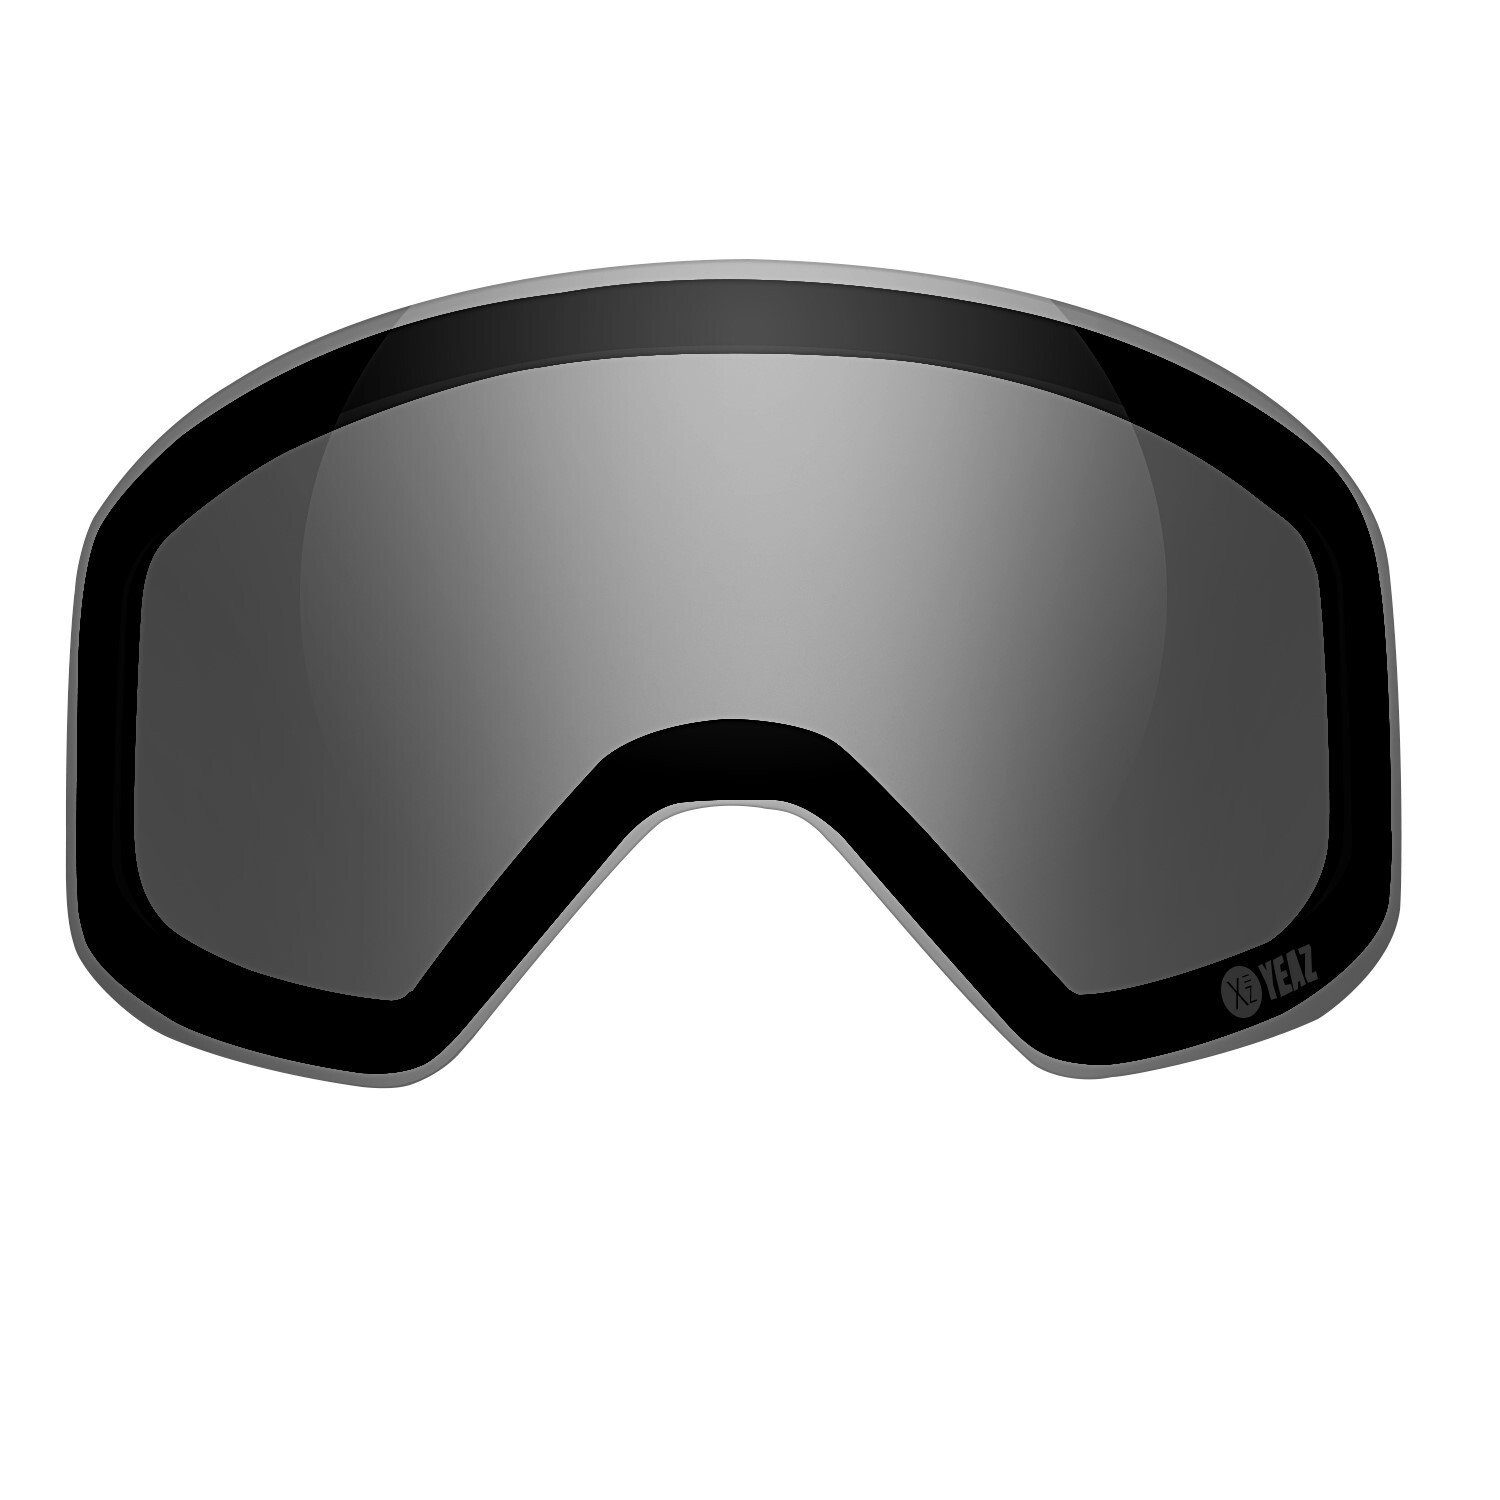 YEAZ Skibrille APEX polarisiertes magnetisches wechselglas, Ersatzglas für APEX Skibrille